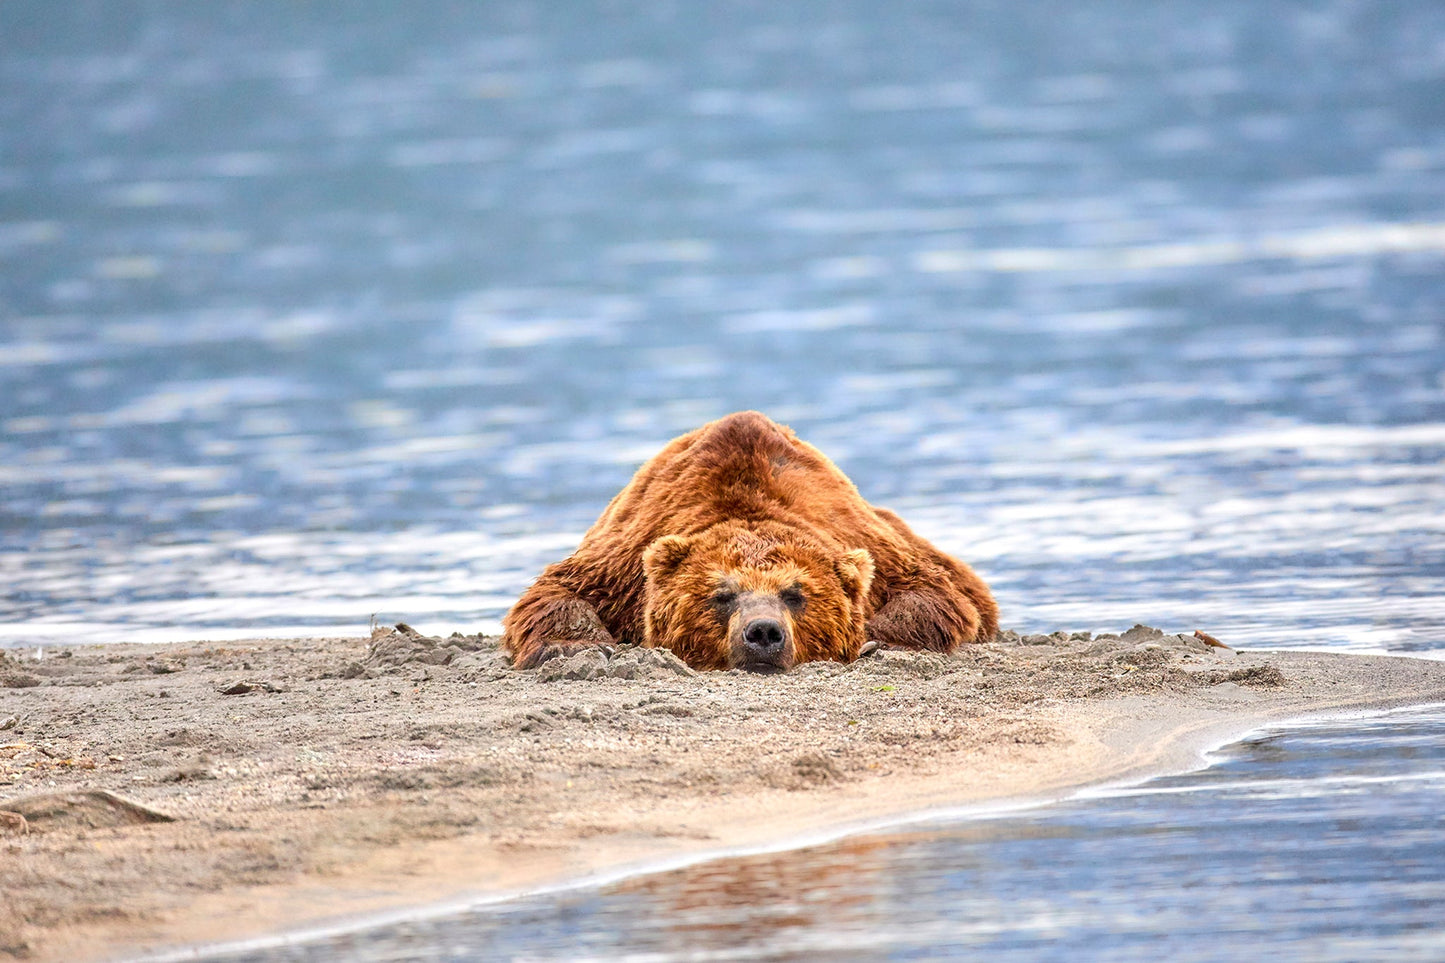 Lazy days - Brown bear, Kamchatka Russia